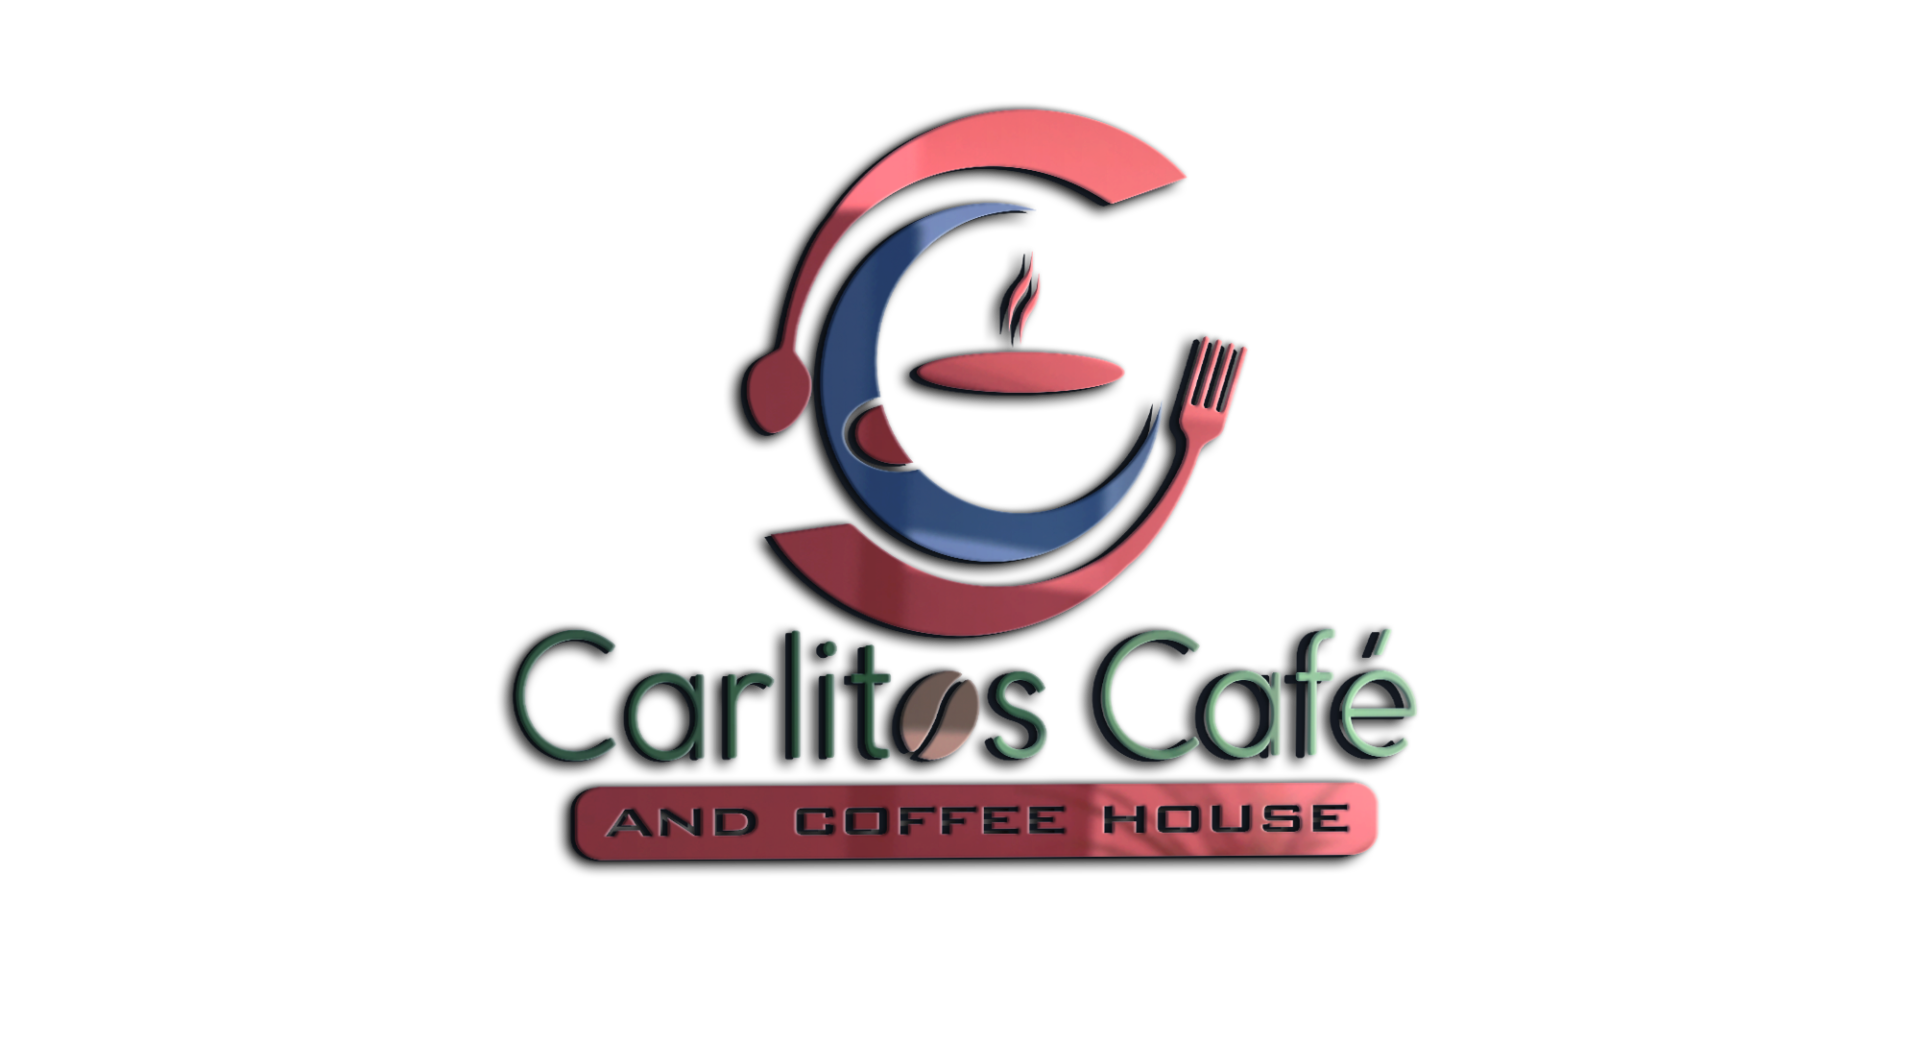 Carlitos Cafe and Coffee House logo